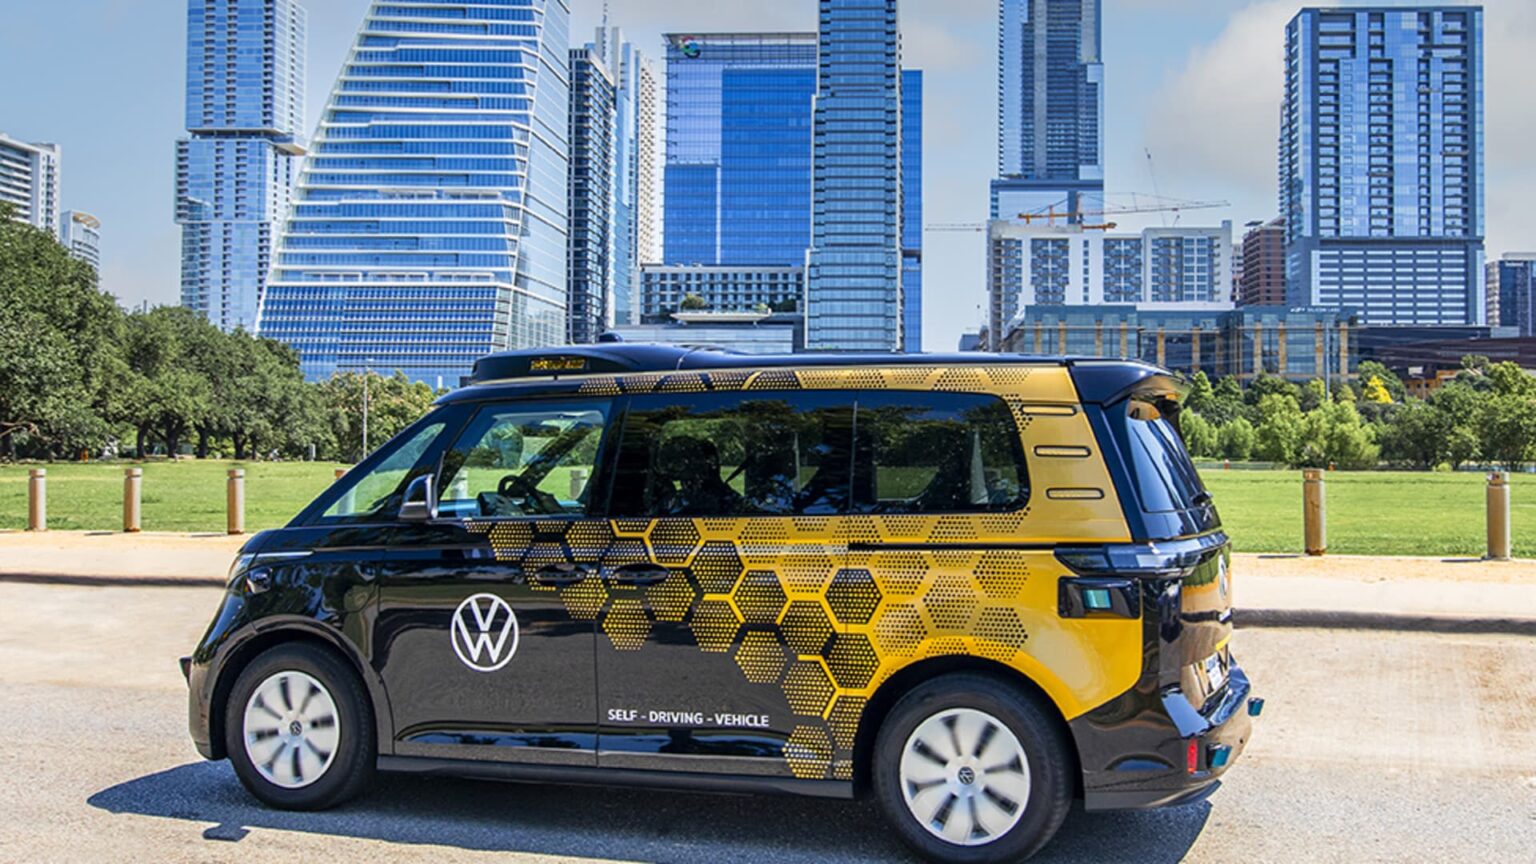 Tests with Volkswagen-Mobileye autonomous vehicles start in Austin